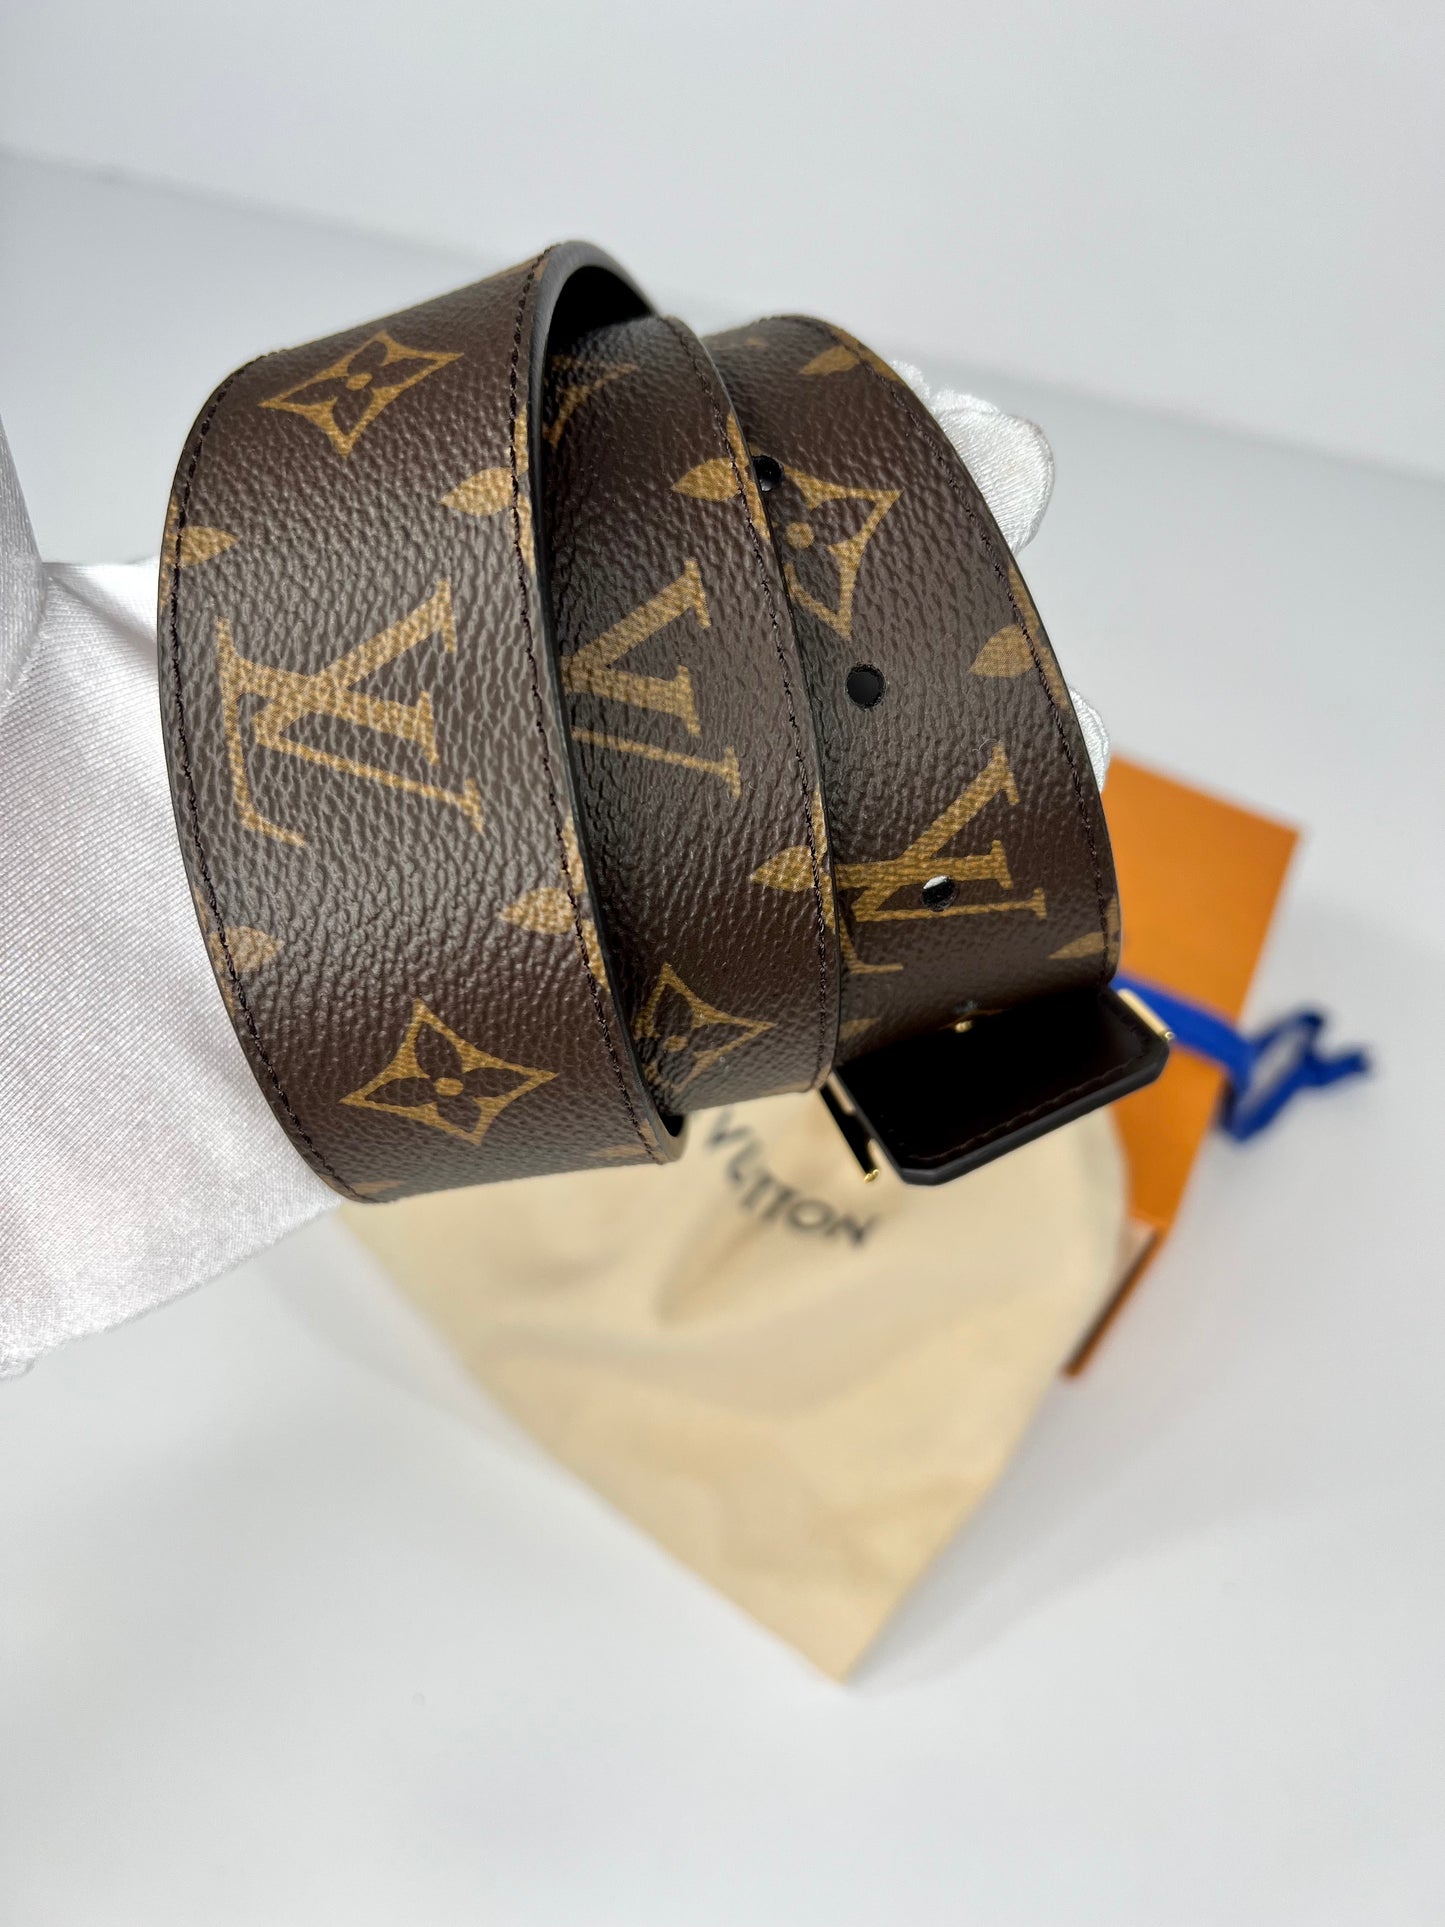 Louis Vuitton LV Initiales 40MM Reversible Belt